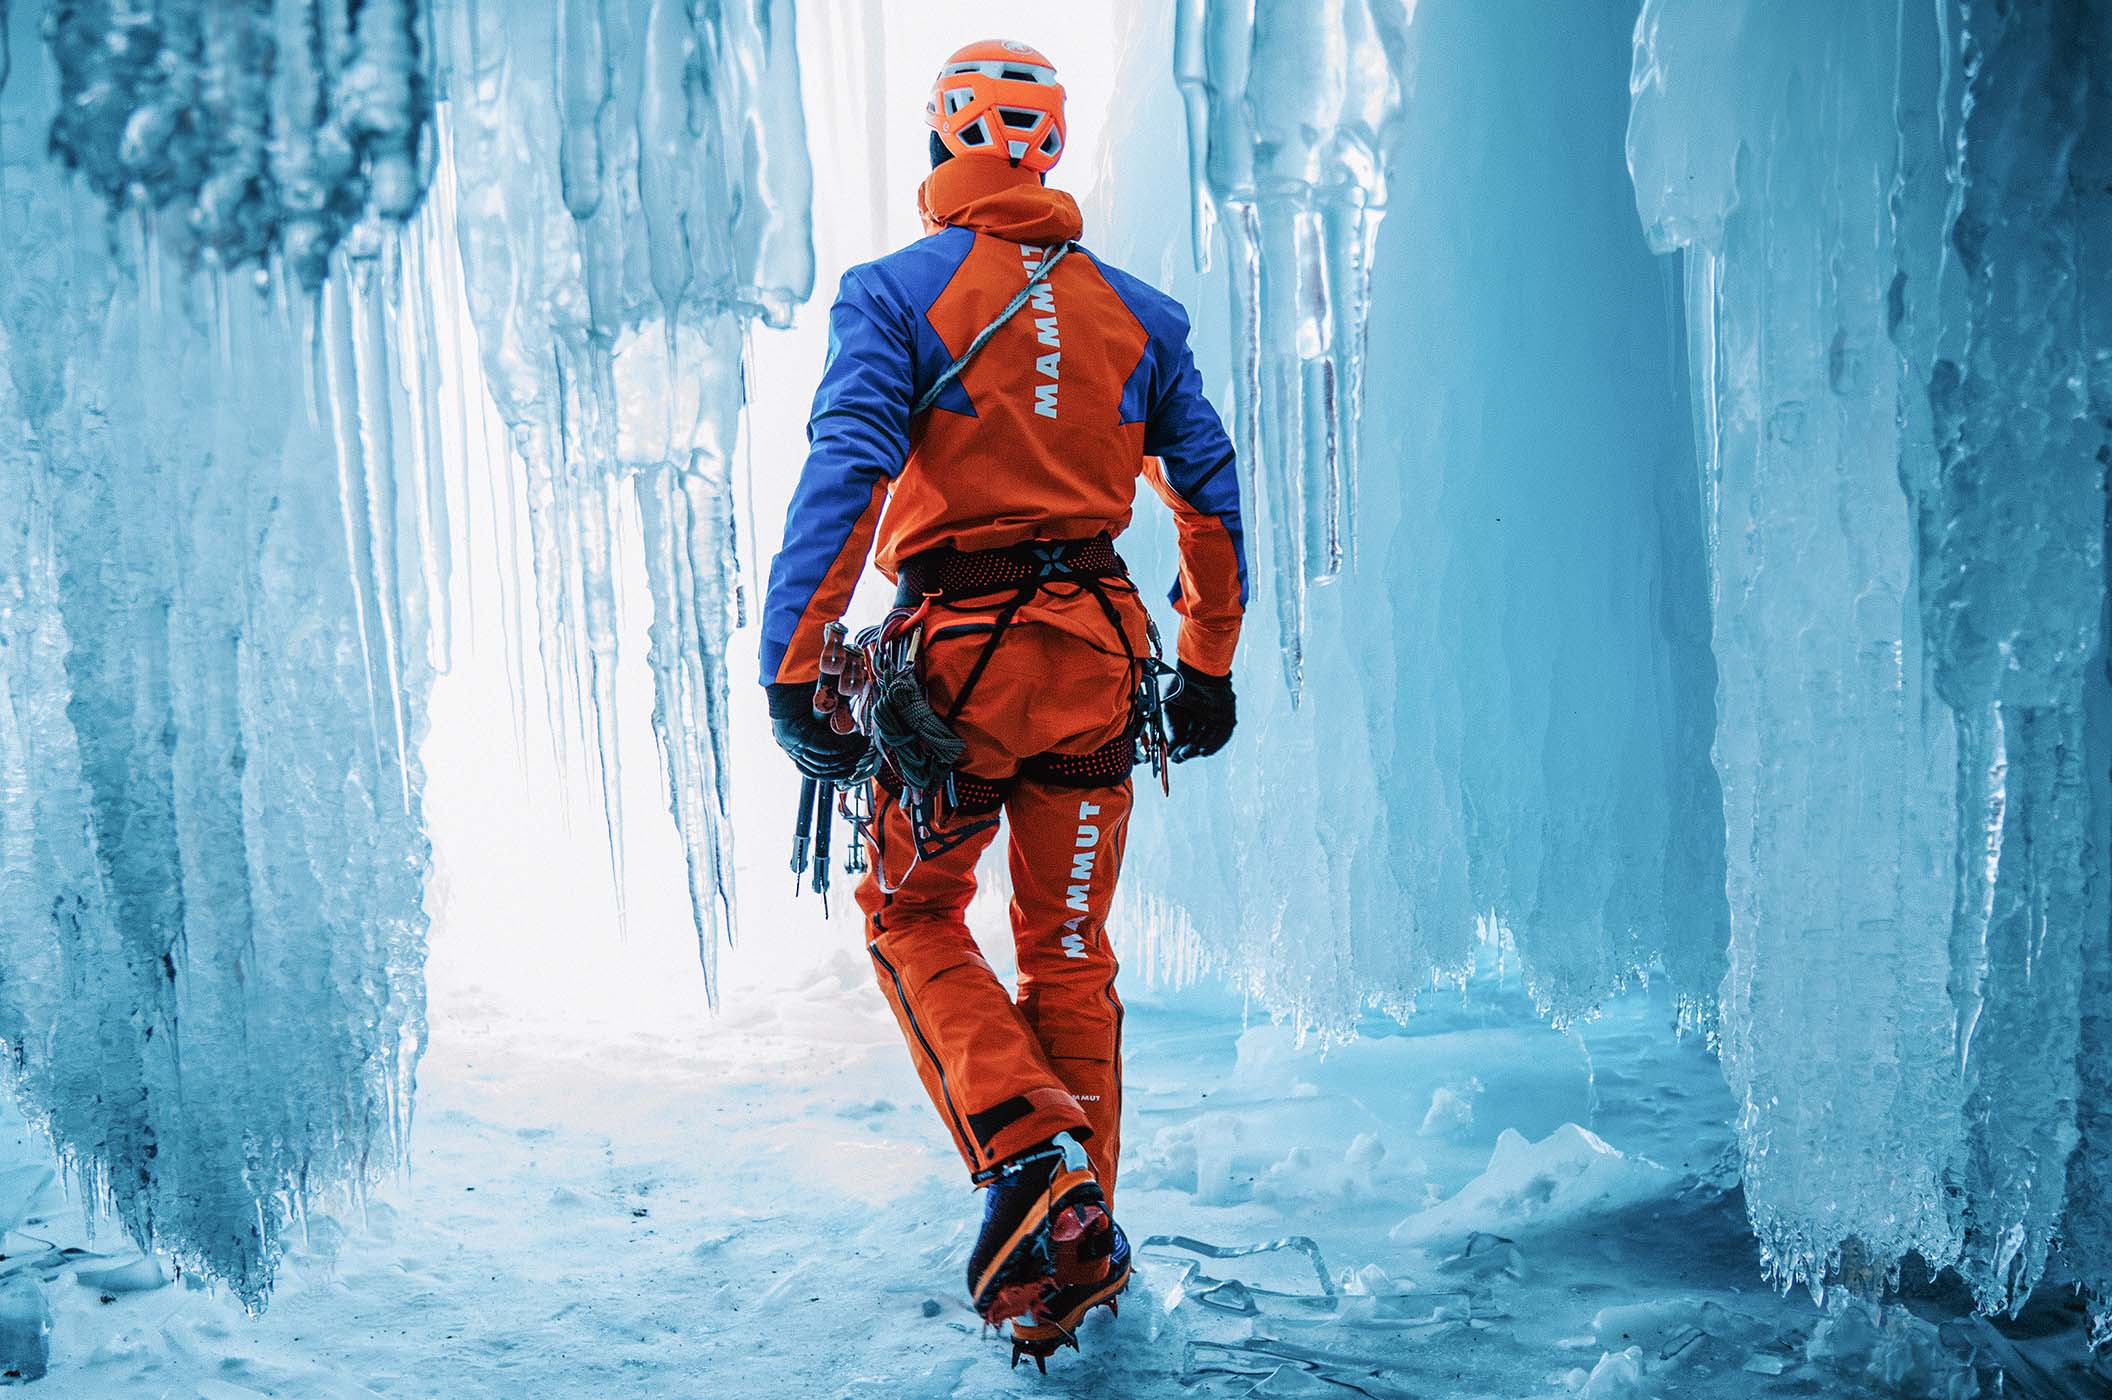 Mammut Eiger Extreme - bergsportkleding en -uitrusting voor professionele outdoor-sporters